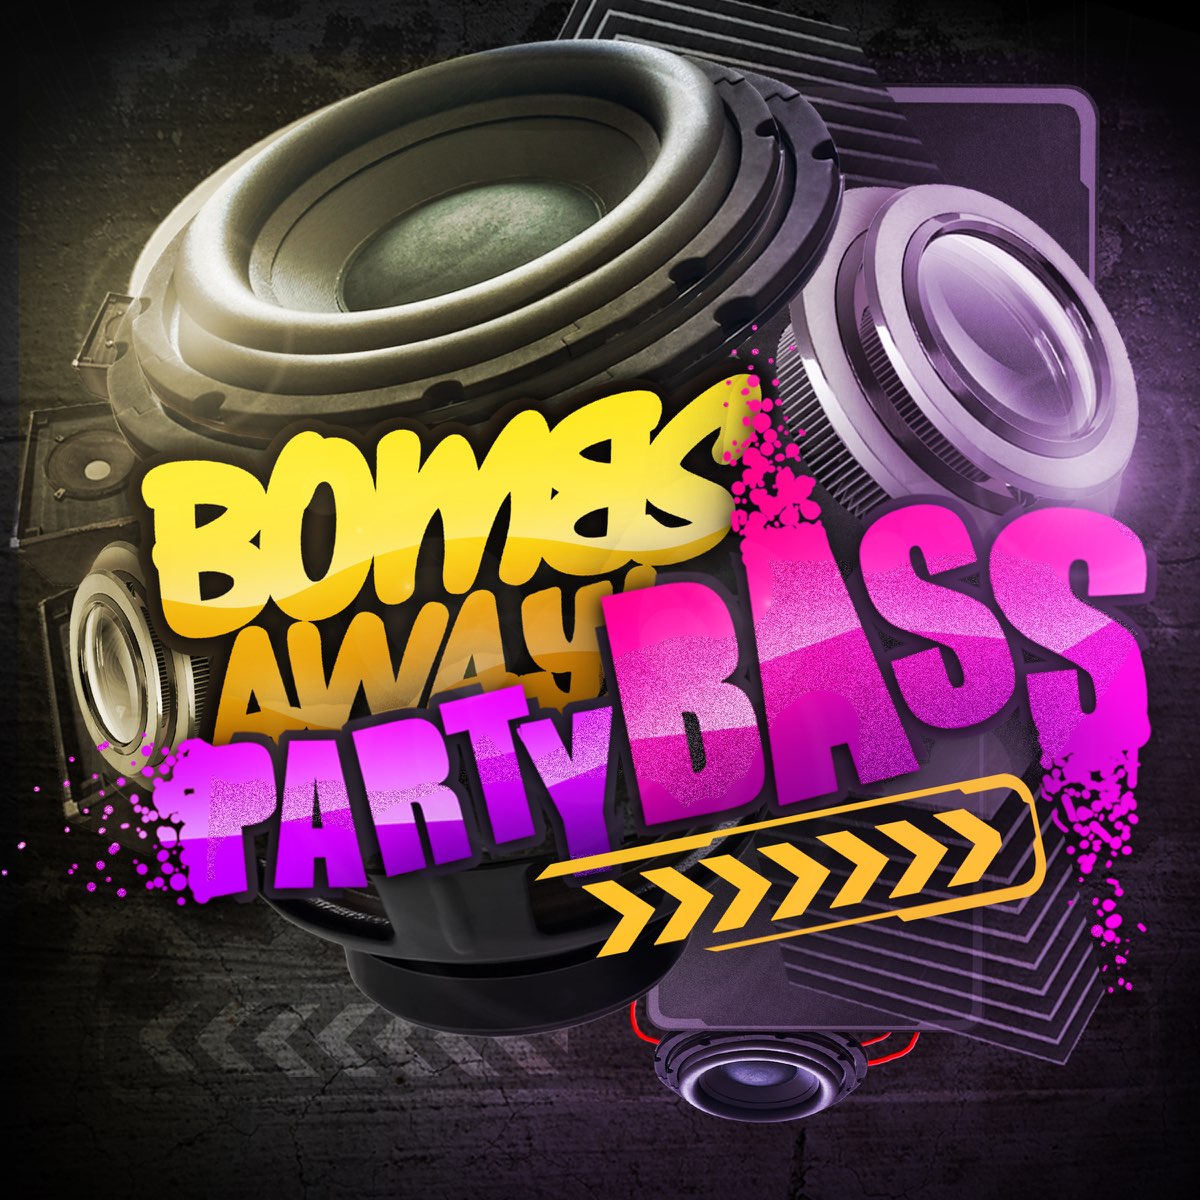 Full bass remix. Bass Remix. Bass вечеринка. Ремикс басс. Bombs away Party Bass.